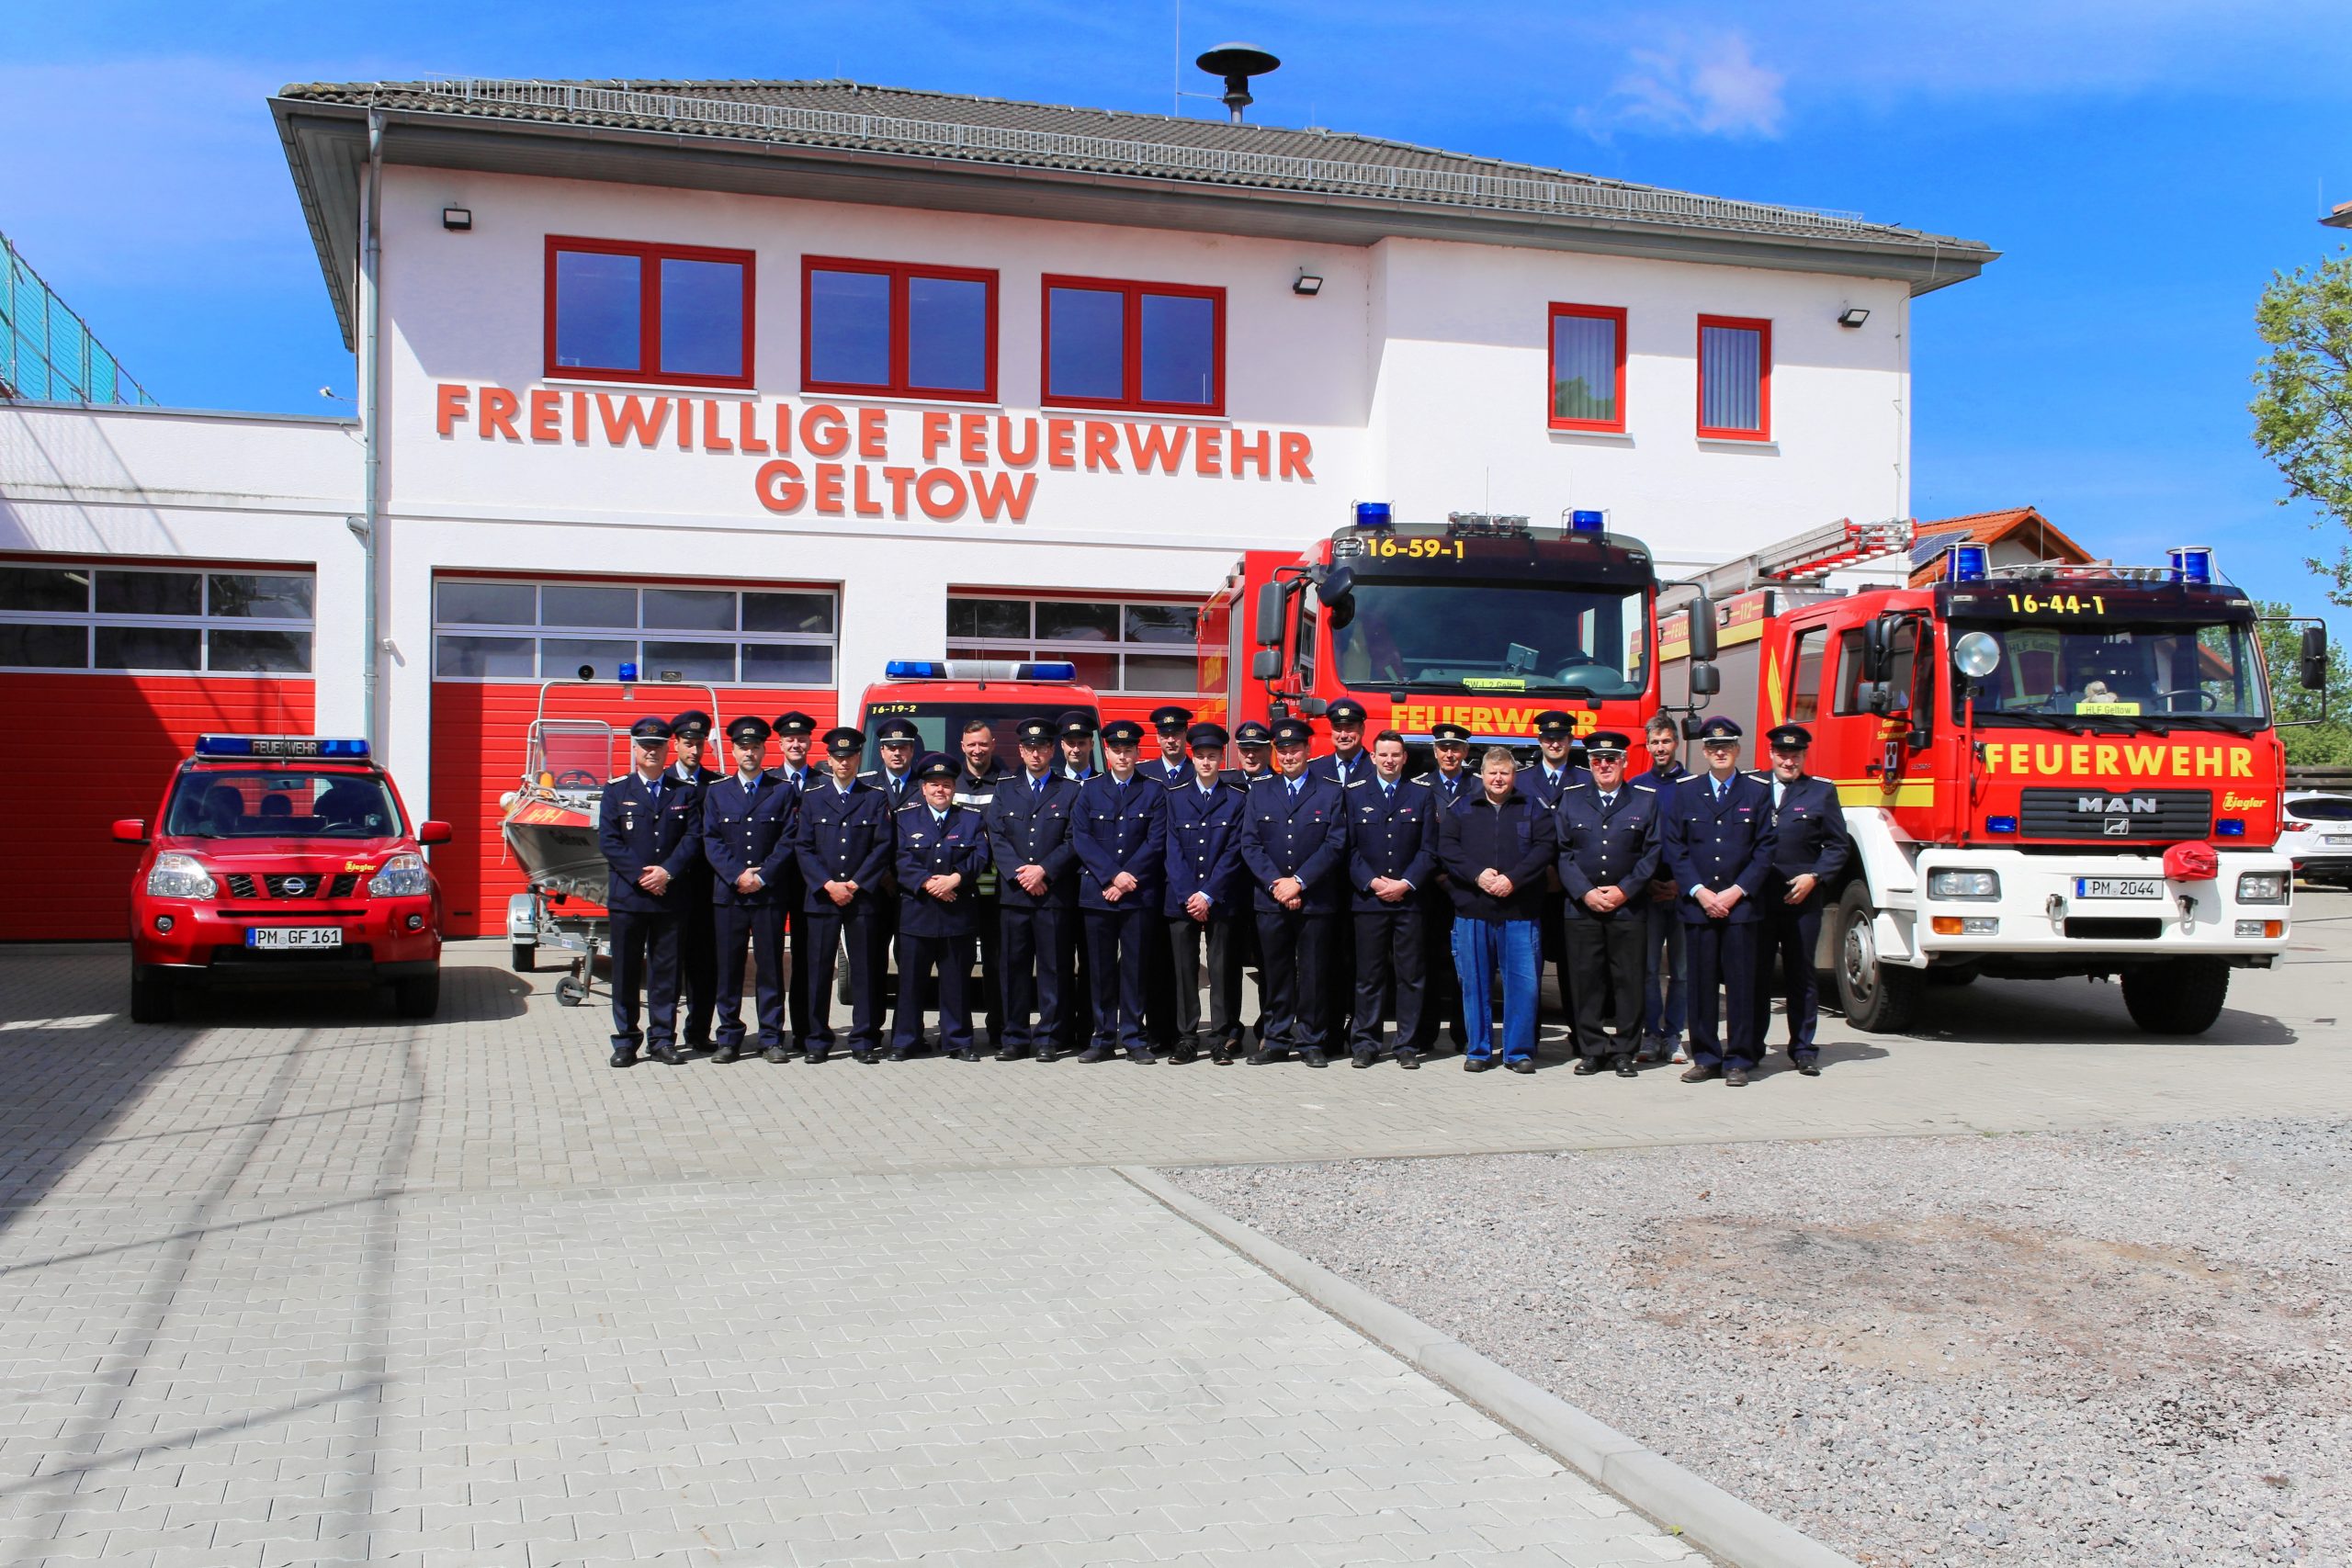 Gruppenfoto aller Kameraden der Feuerwehr, in Uniform vor den Fahrzeugen.